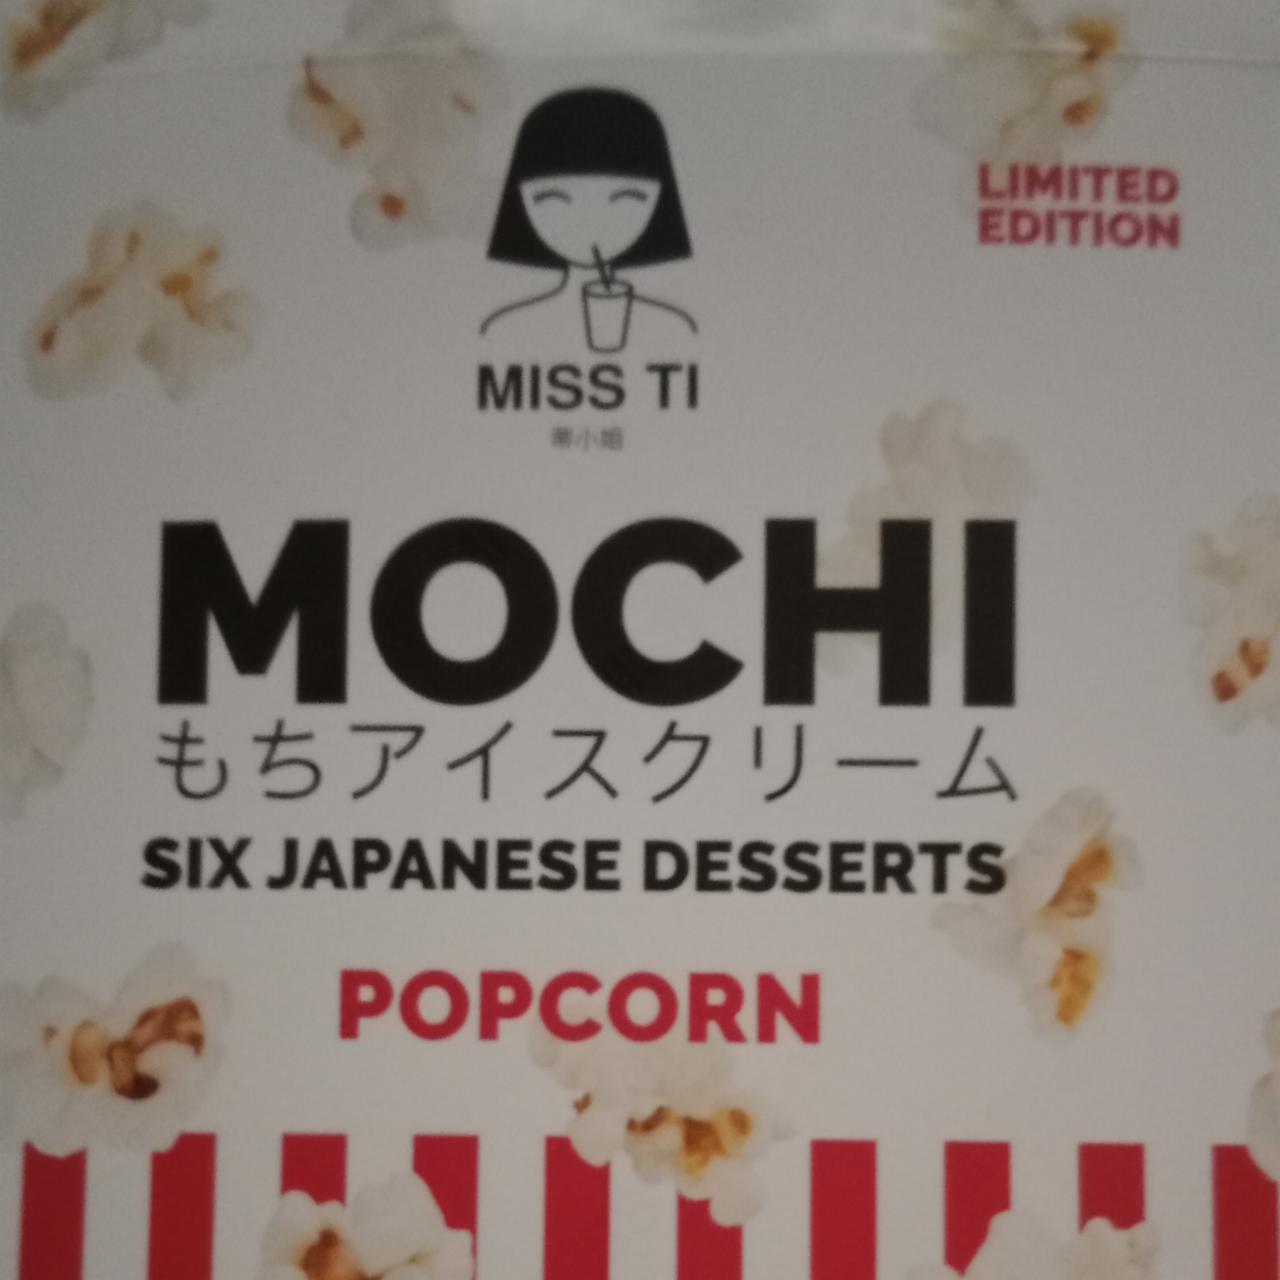 Zdjęcia - Mochi popcorn Miss Ti